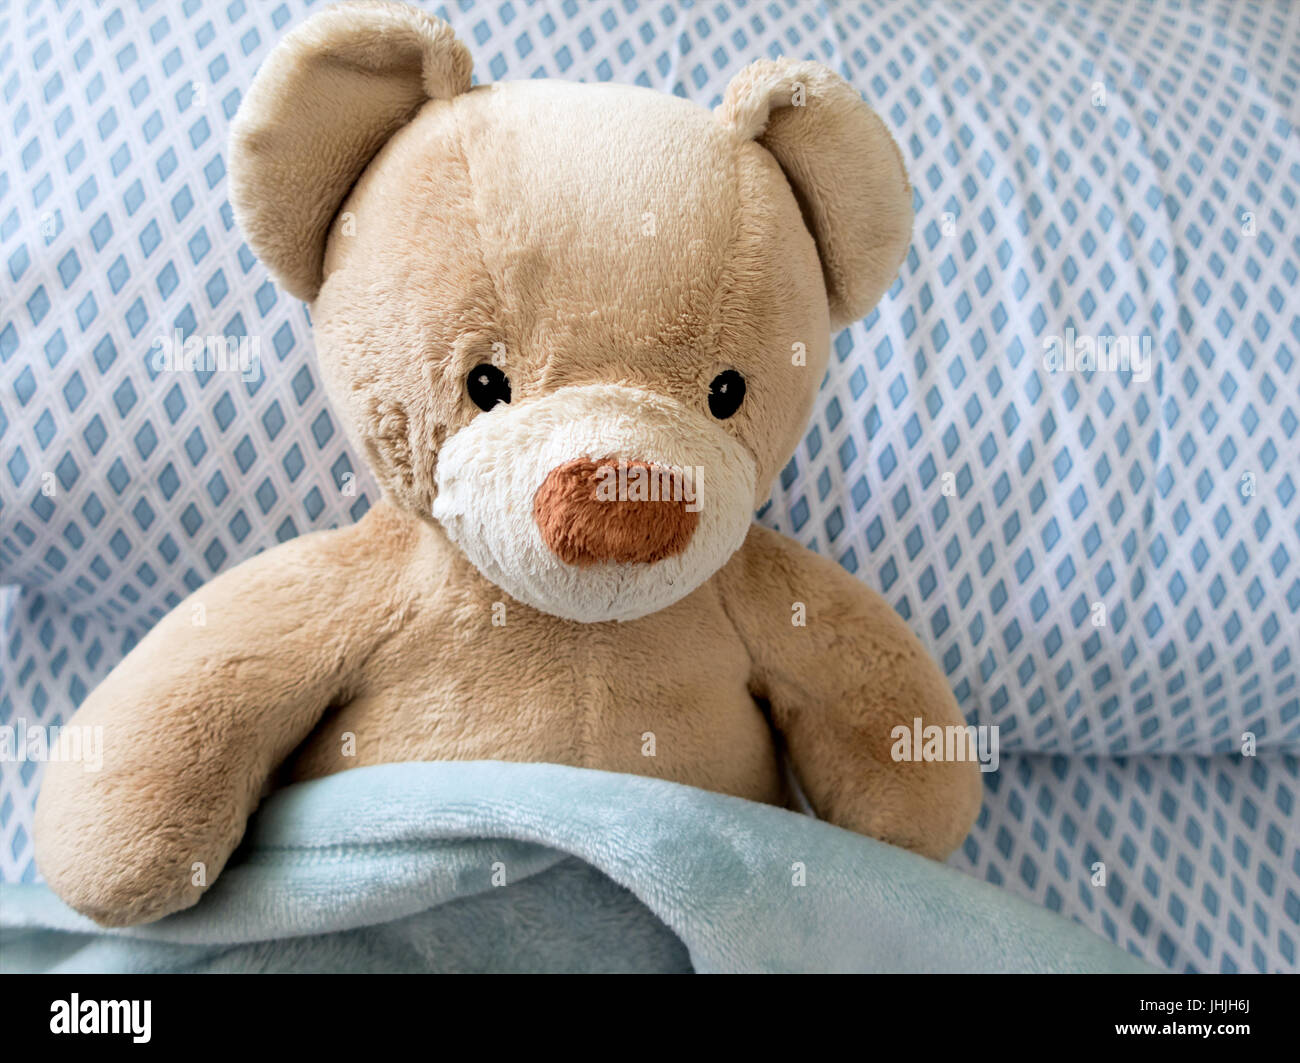 Eine Tan Teddybär im Bett mit einem blau karierte Kissen und blaue Decke sitzen. Stockfoto